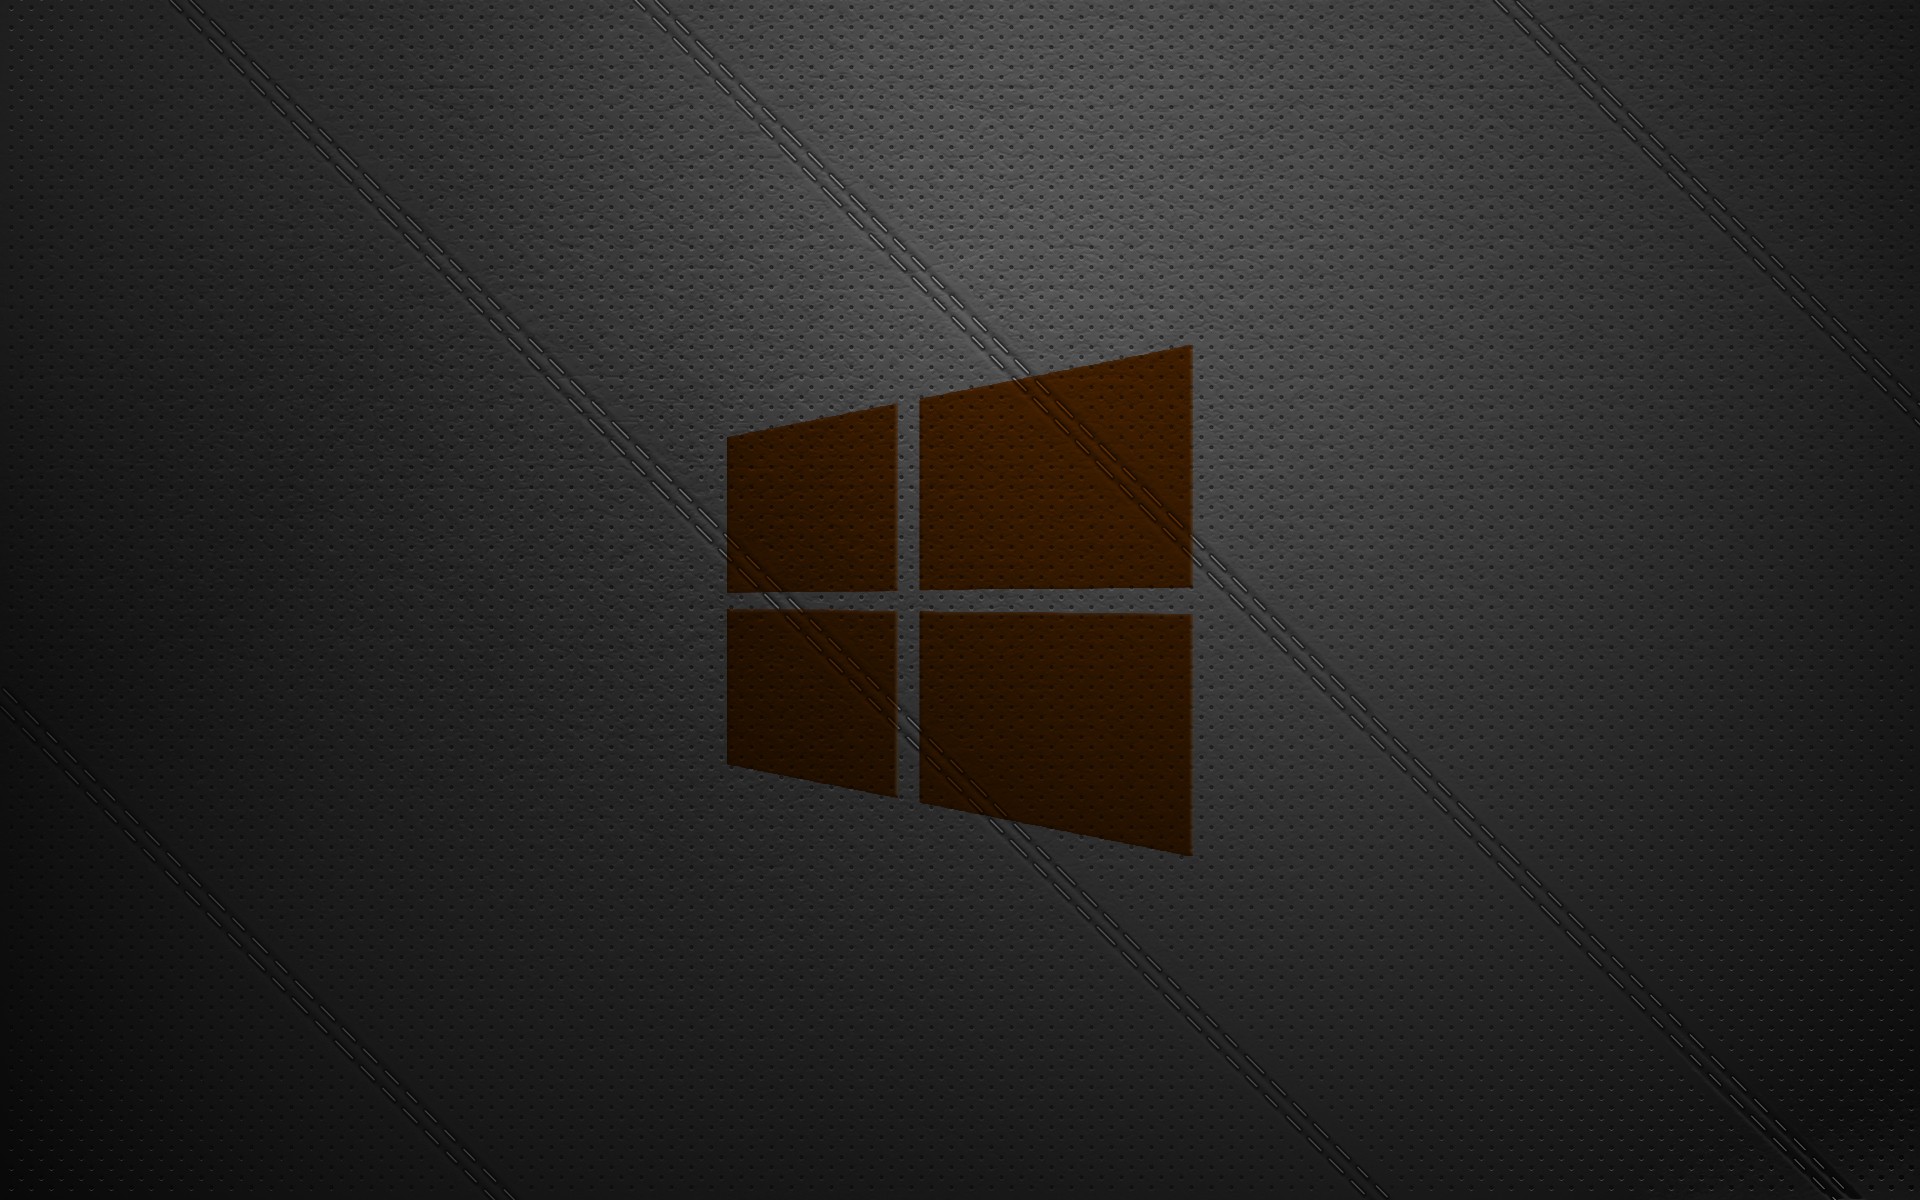 Baixe gratuitamente a imagem Tecnologia, Janelas, Windows 8 na área de trabalho do seu PC